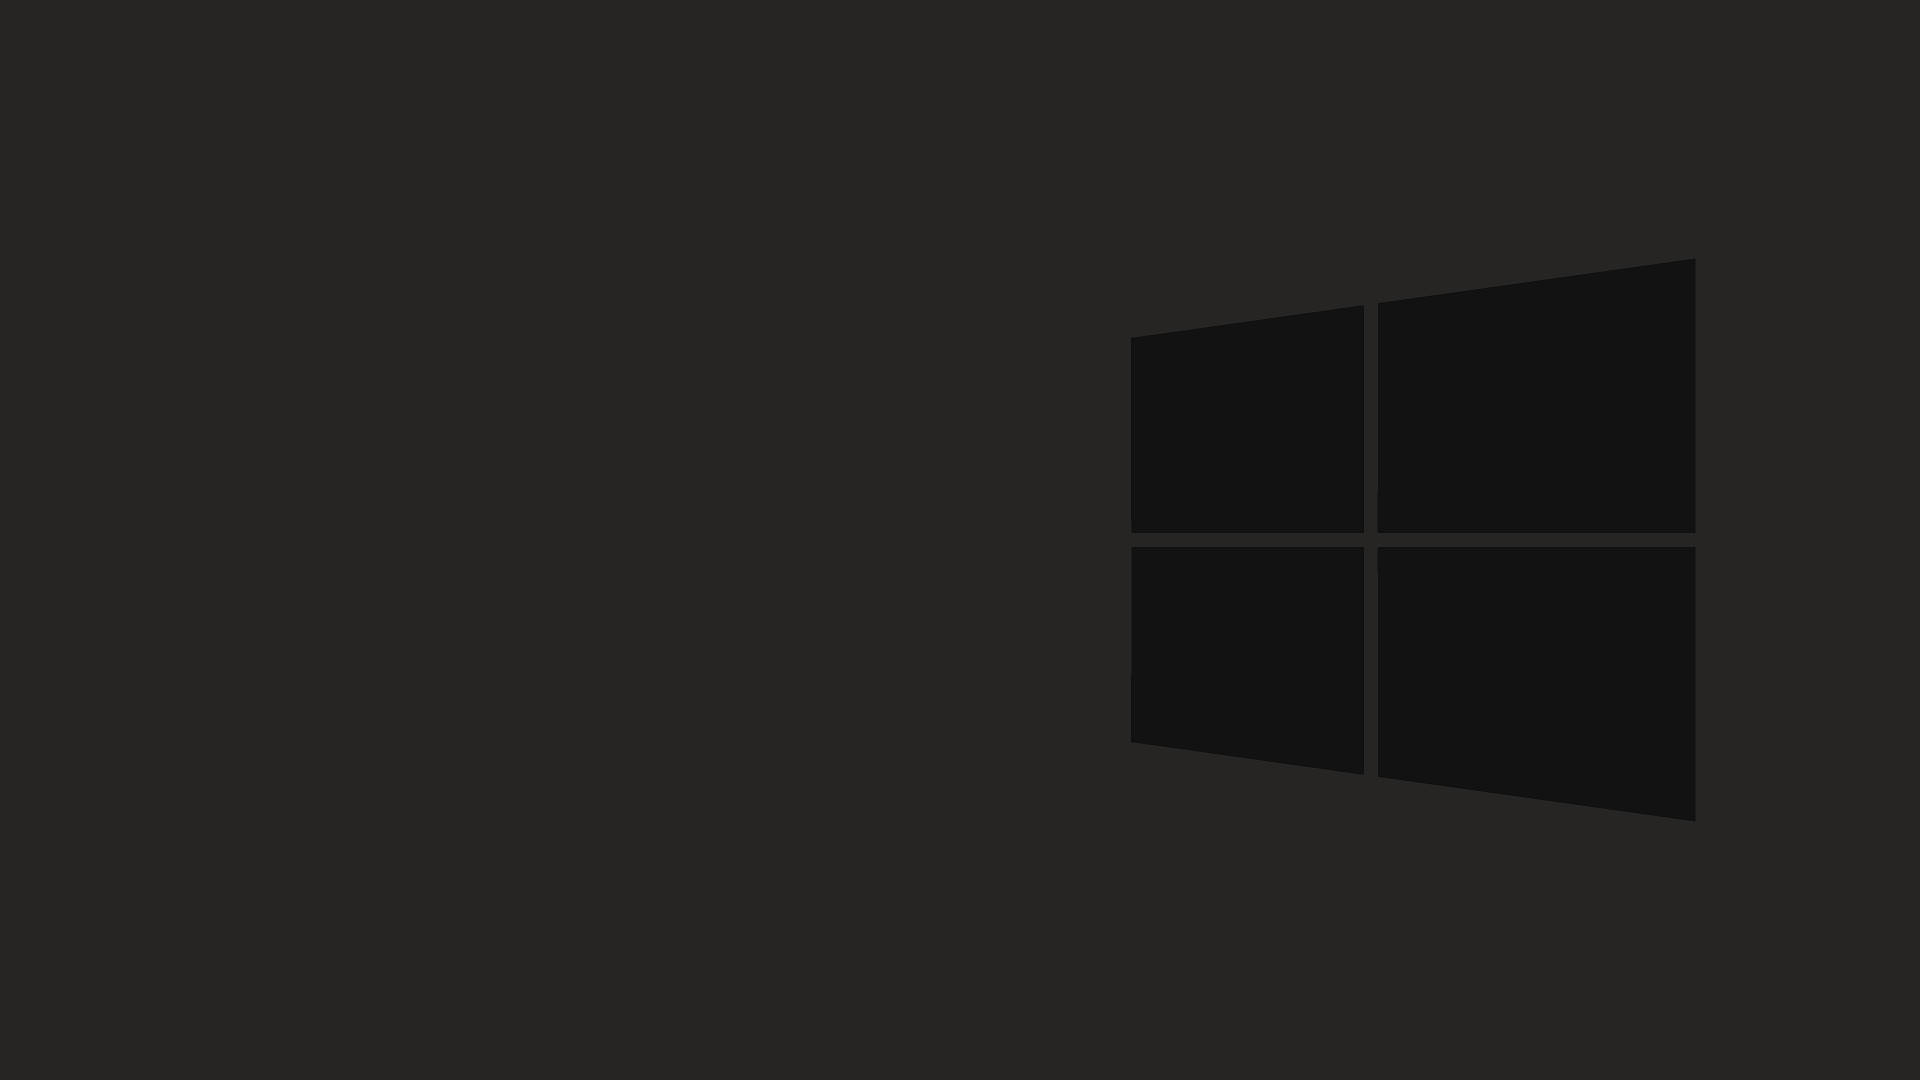 Dark Minimalist Big Windows Logo Wallpaper